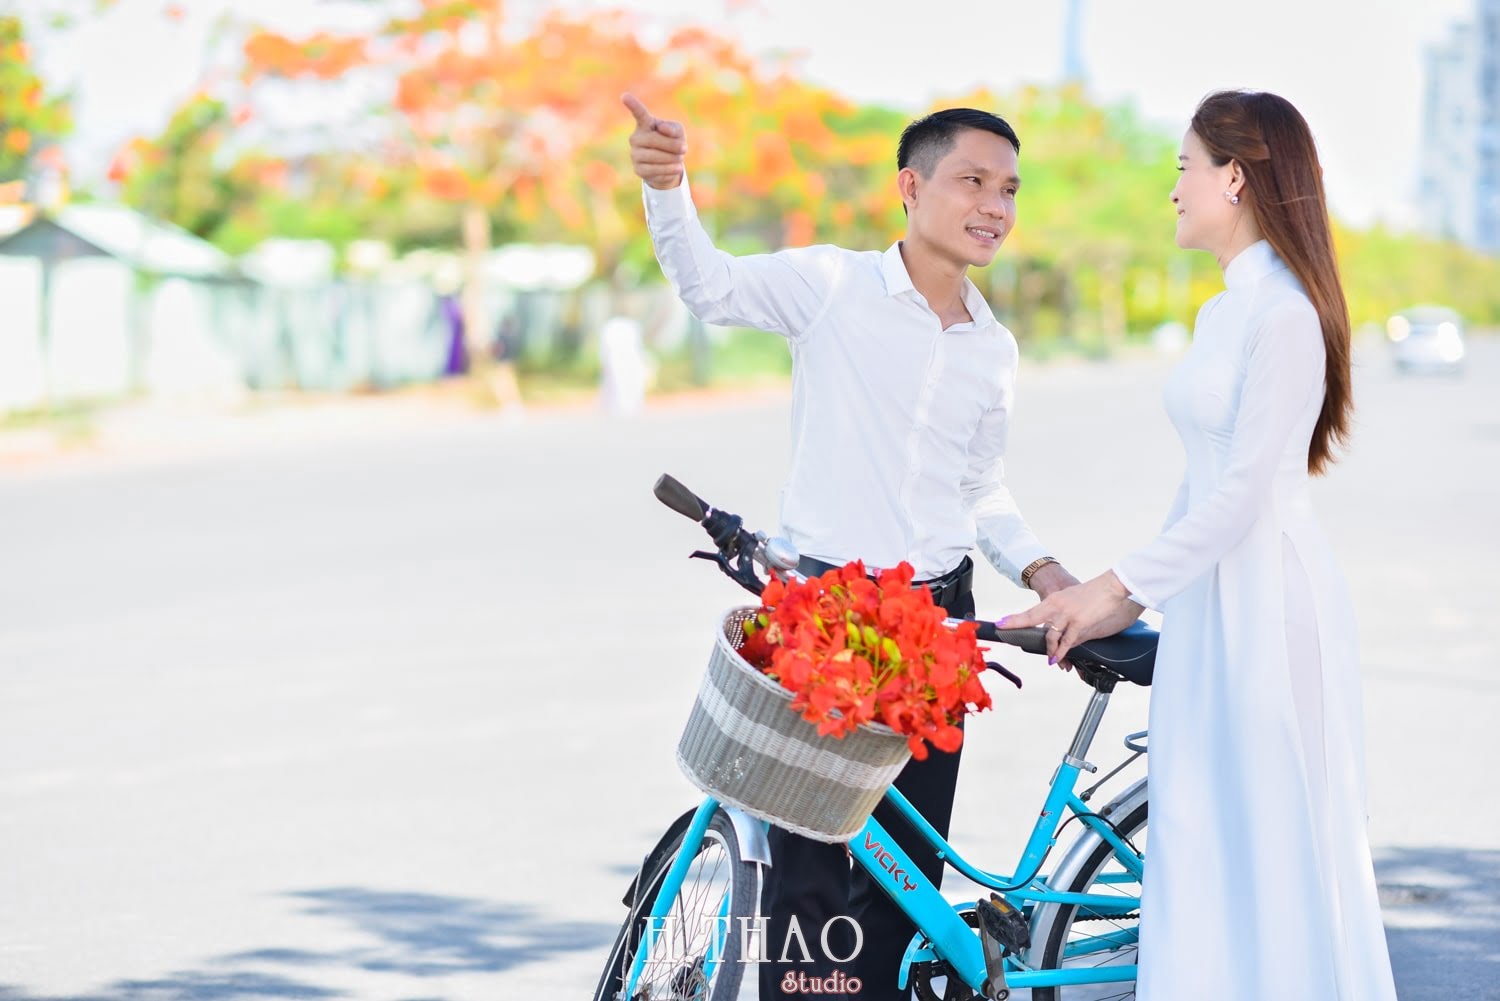 Anh hoa phuong 9 min - Bộ ảnh couple chụp với hoa phượng tuyệt đẹp - HThao Studio